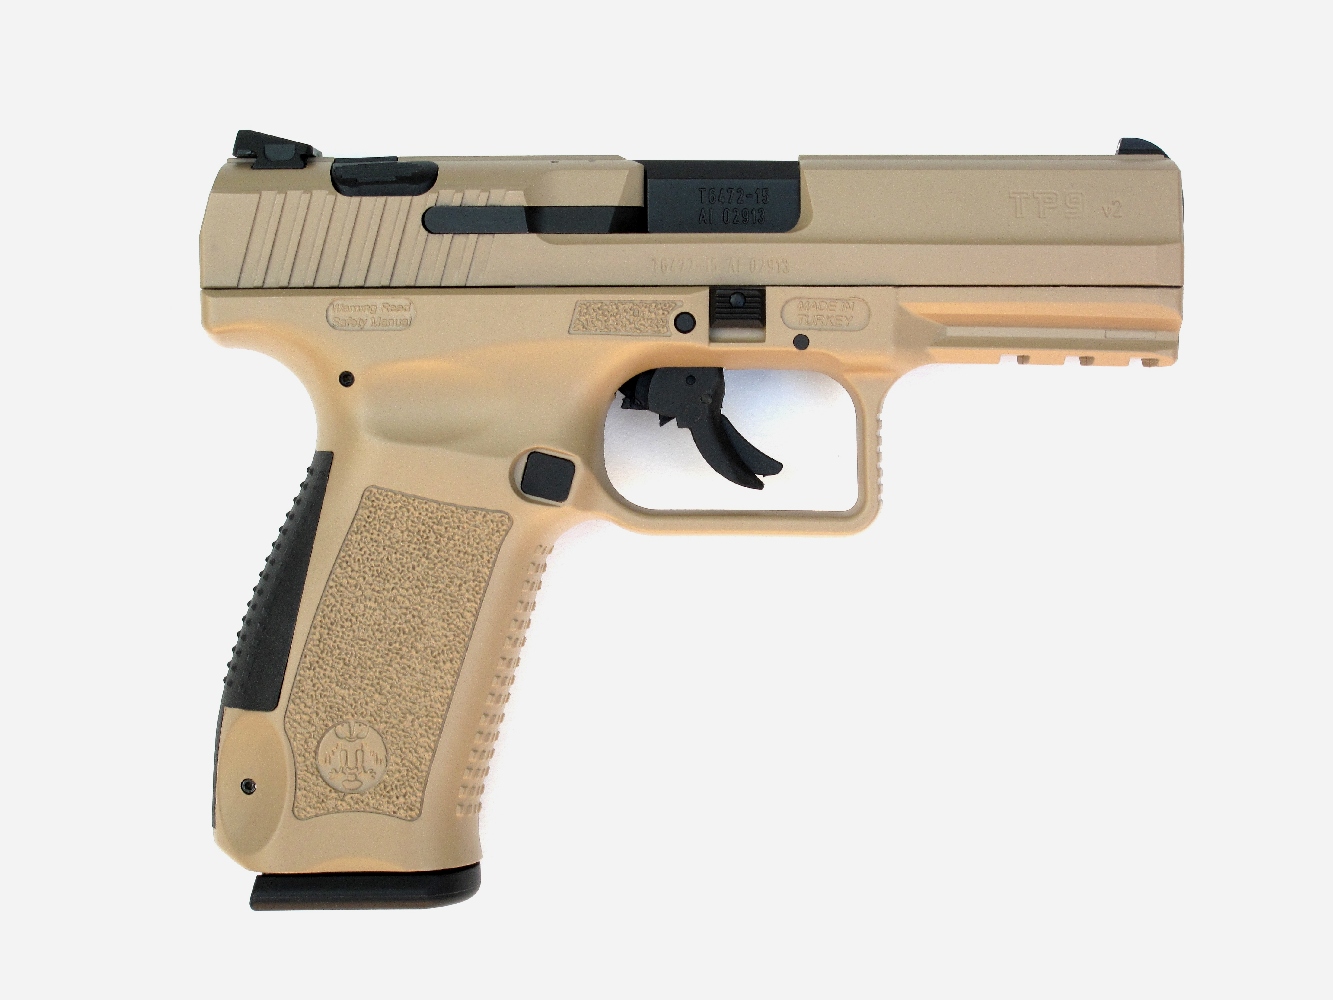 Le TP9 V2 se présente comme une judicieuse synthèse de diverses caractéristiques empruntées aux autres pistolets de combat à carcasse en polymère tels que le Glock 17 et le Walther P99.